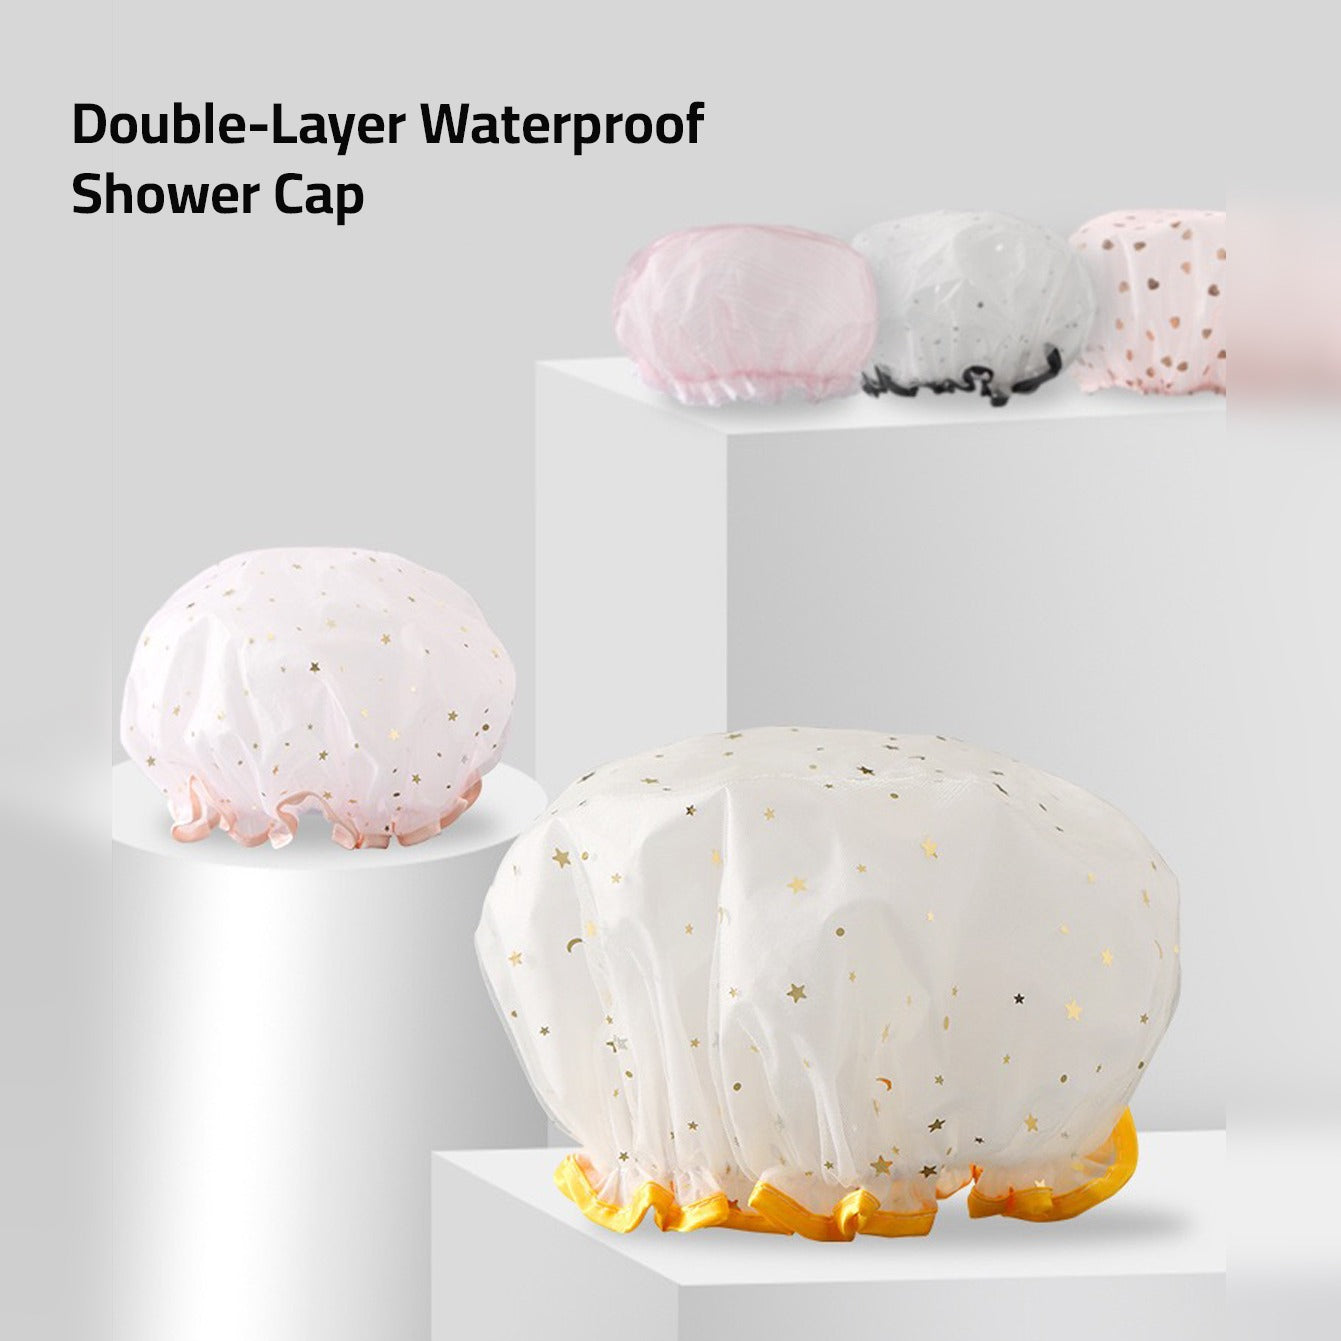 A Set Of Shower Cap.